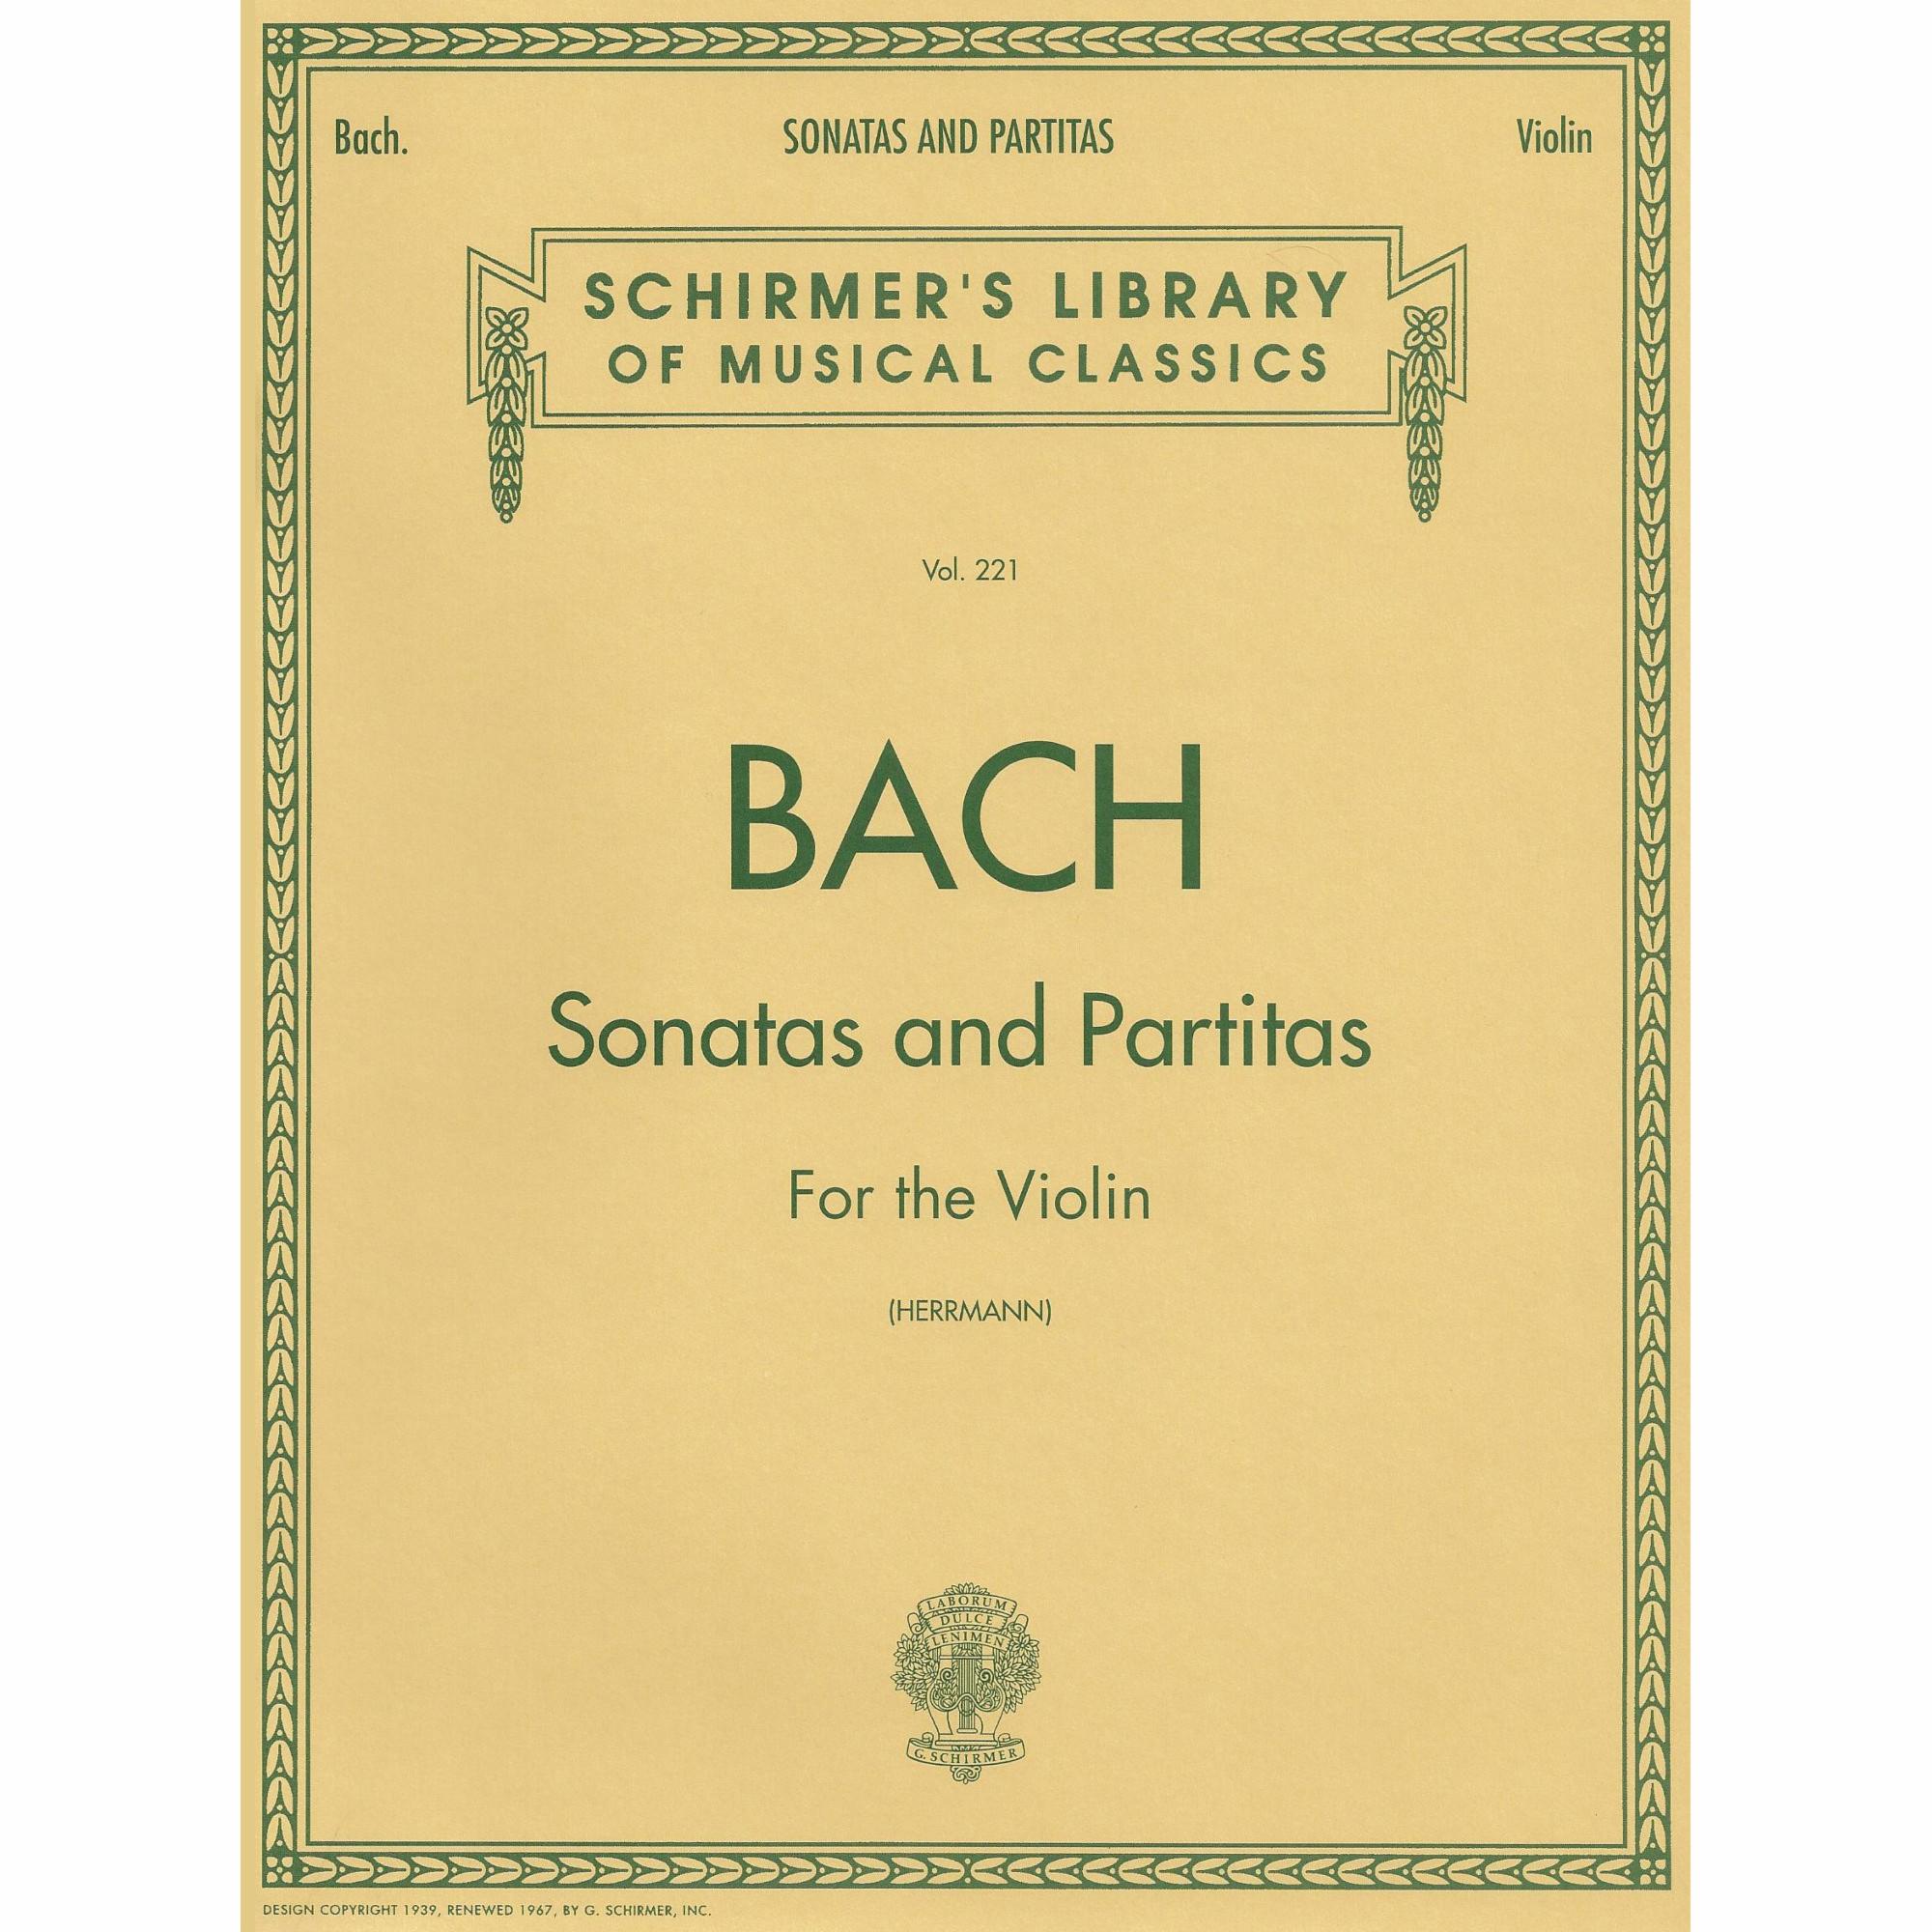 Bach -- Sonatas and Partitas for Solo Violin